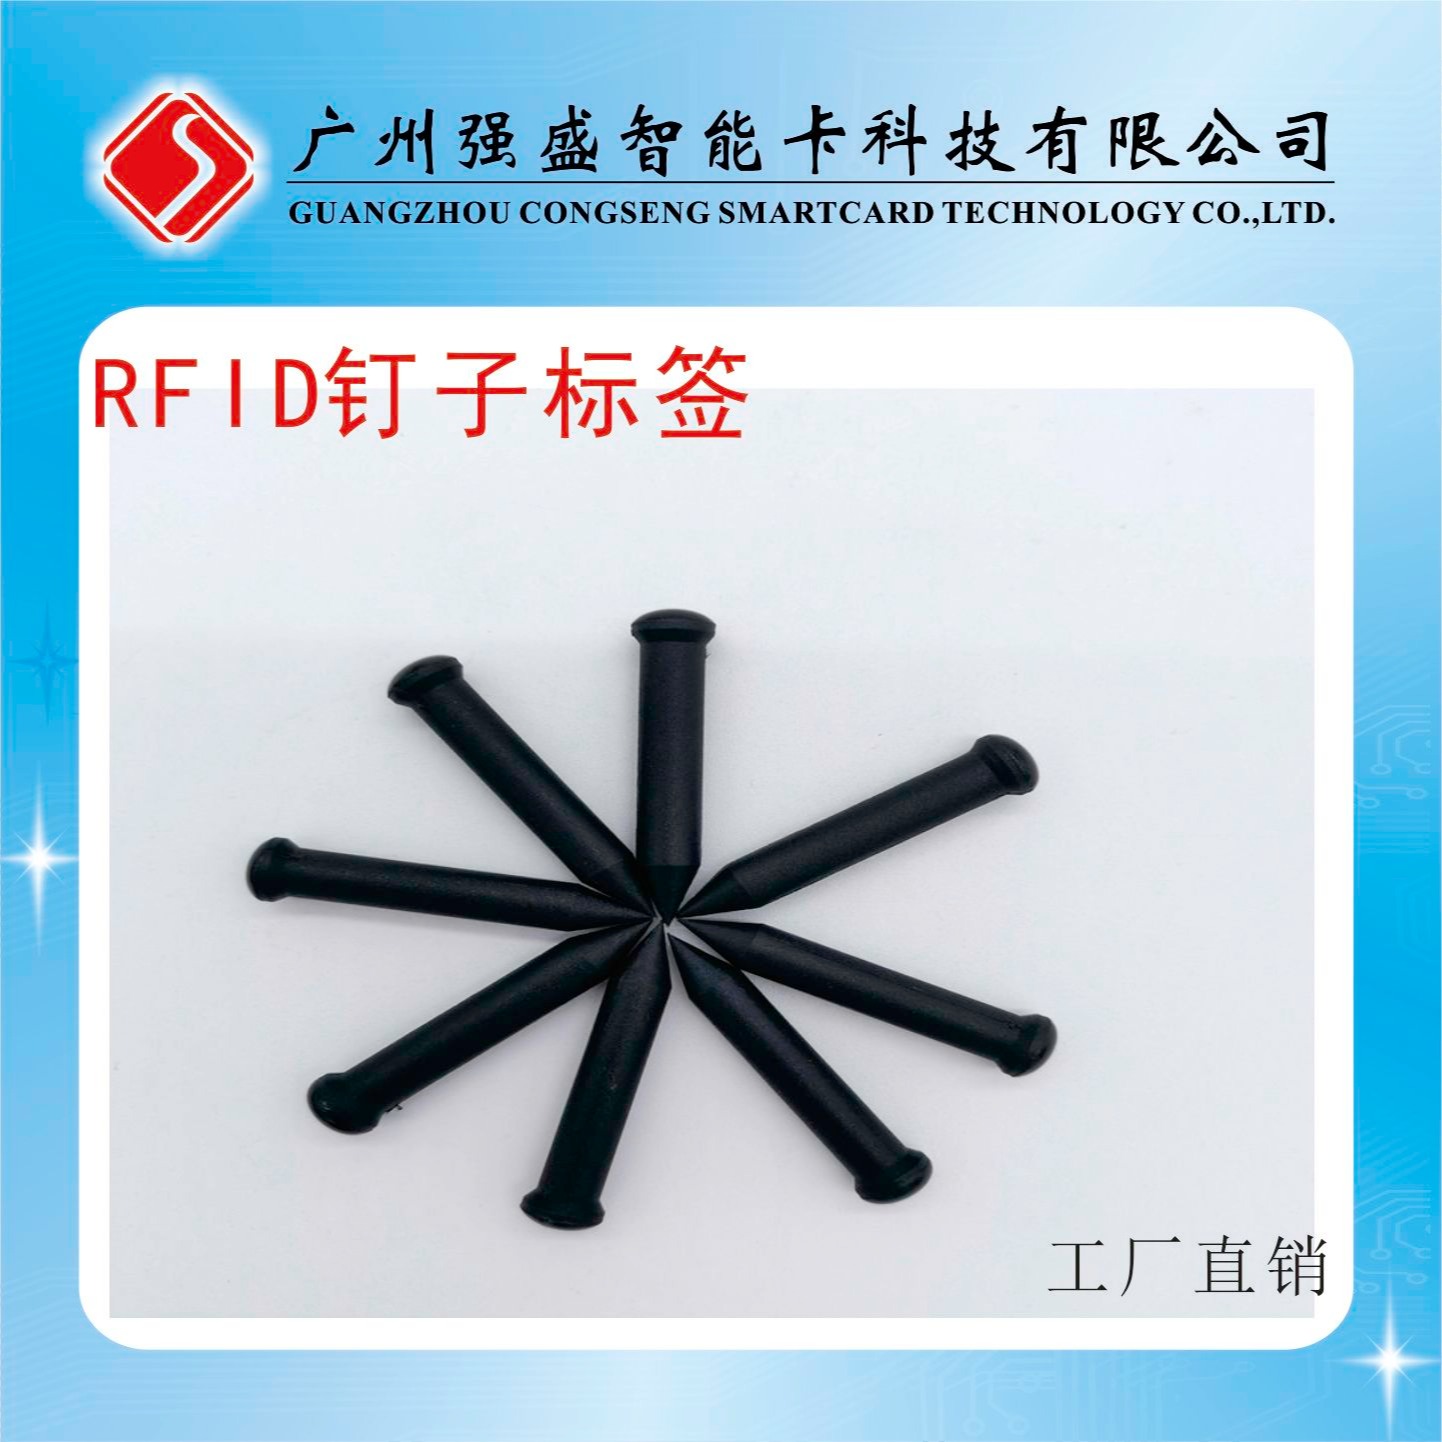 供应超高频RFID钉子标签、EM4305钉子形标签、ABS材料钉子标签价格QS-0113